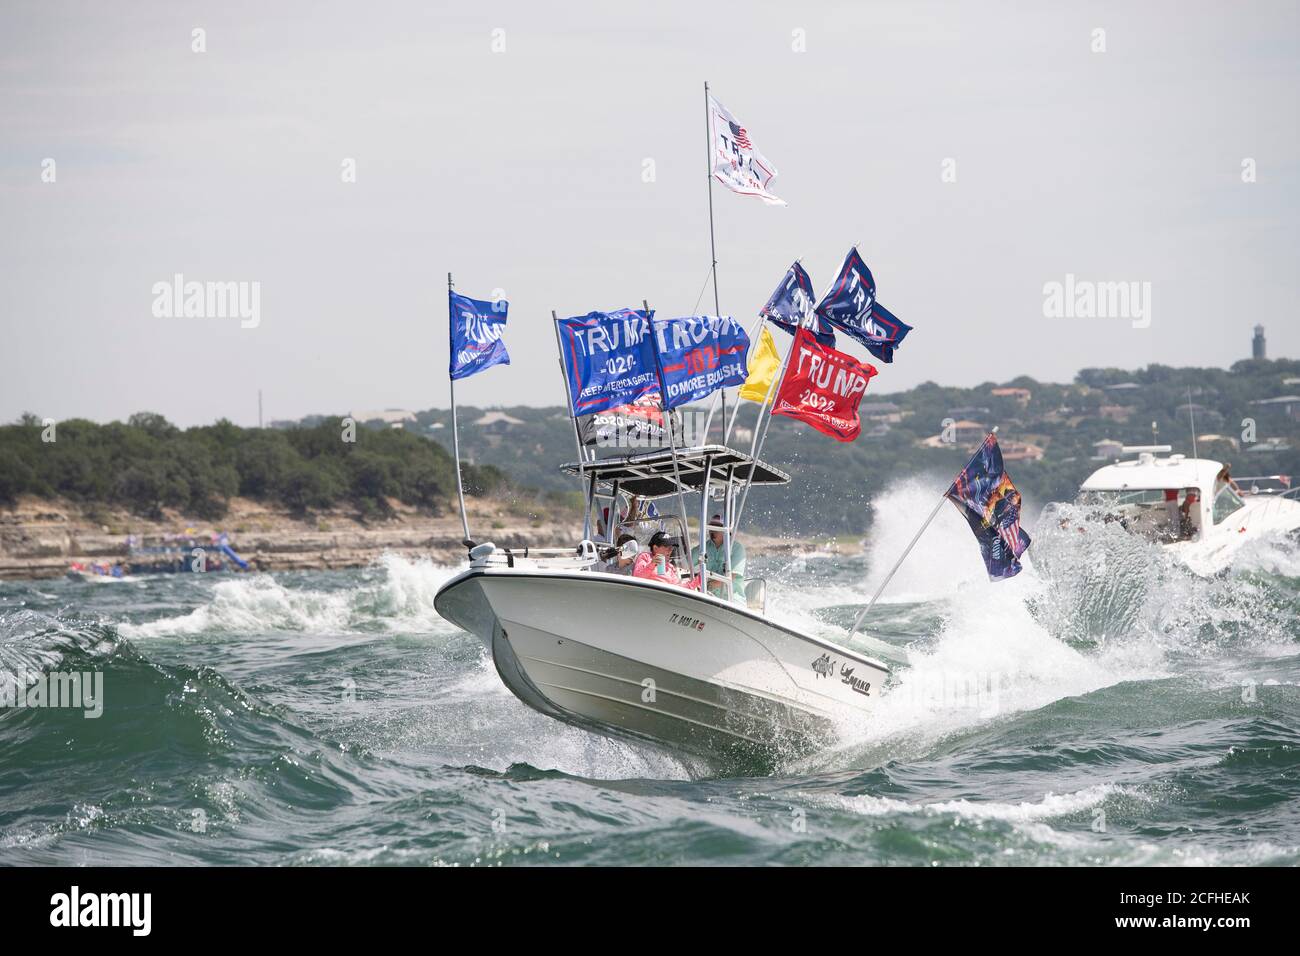 Lakeway, Texas États-Unis 5 septembre 2020 : les drapeaux de Trump volent à travers des vagues extrêmement lourdes remuées par des bateaux à proximité lors d'une parade de bateau pour montrer le soutien à l'US Presd Donald Trump. Le week-end de la fête du travail sur un lac du Texas central a attiré des centaines de motomarines de toutes tailles. Plusieurs bateaux ont été submergés dans les énormes ébarges qui ont été piétinés par la flottille, mais aucune blessure n'a été signalée. Crédit : ©Bob Daemmrich/Alamy Live News Banque D'Images